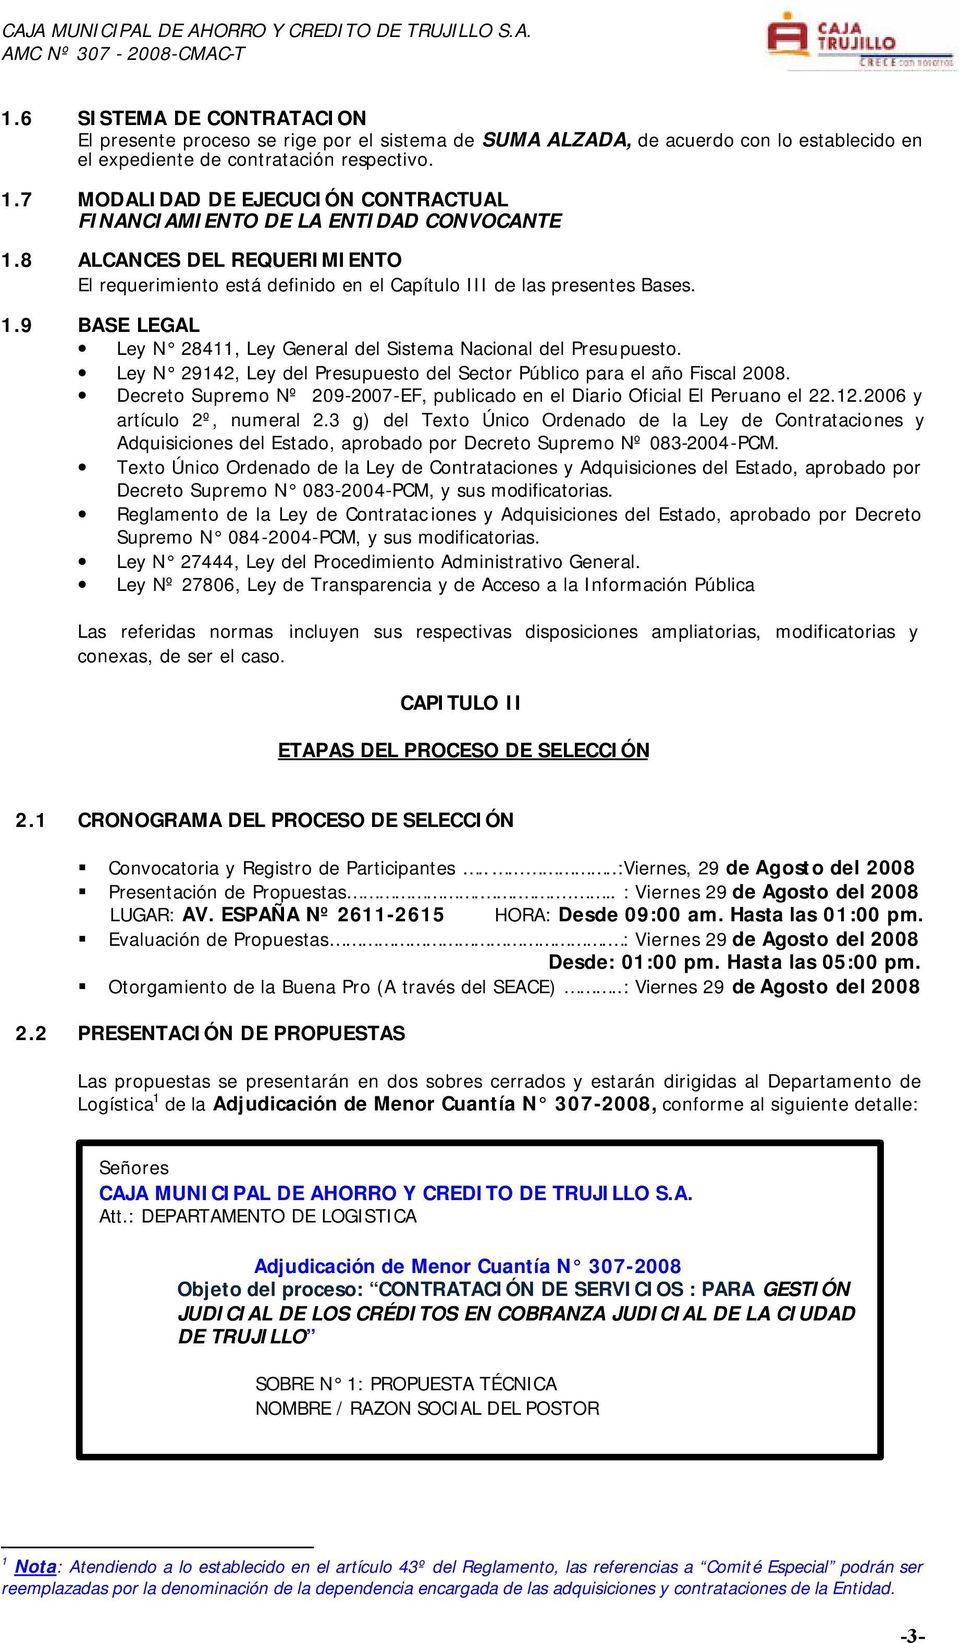 Ley N 29142, Ley del Presupuesto del Sector Público para el año Fiscal 2008. Decreto Supremo Nº 209-2007-EF, publicado en el Diario Oficial El Peruano el 22.12.2006 y artículo 2º, numeral 2.